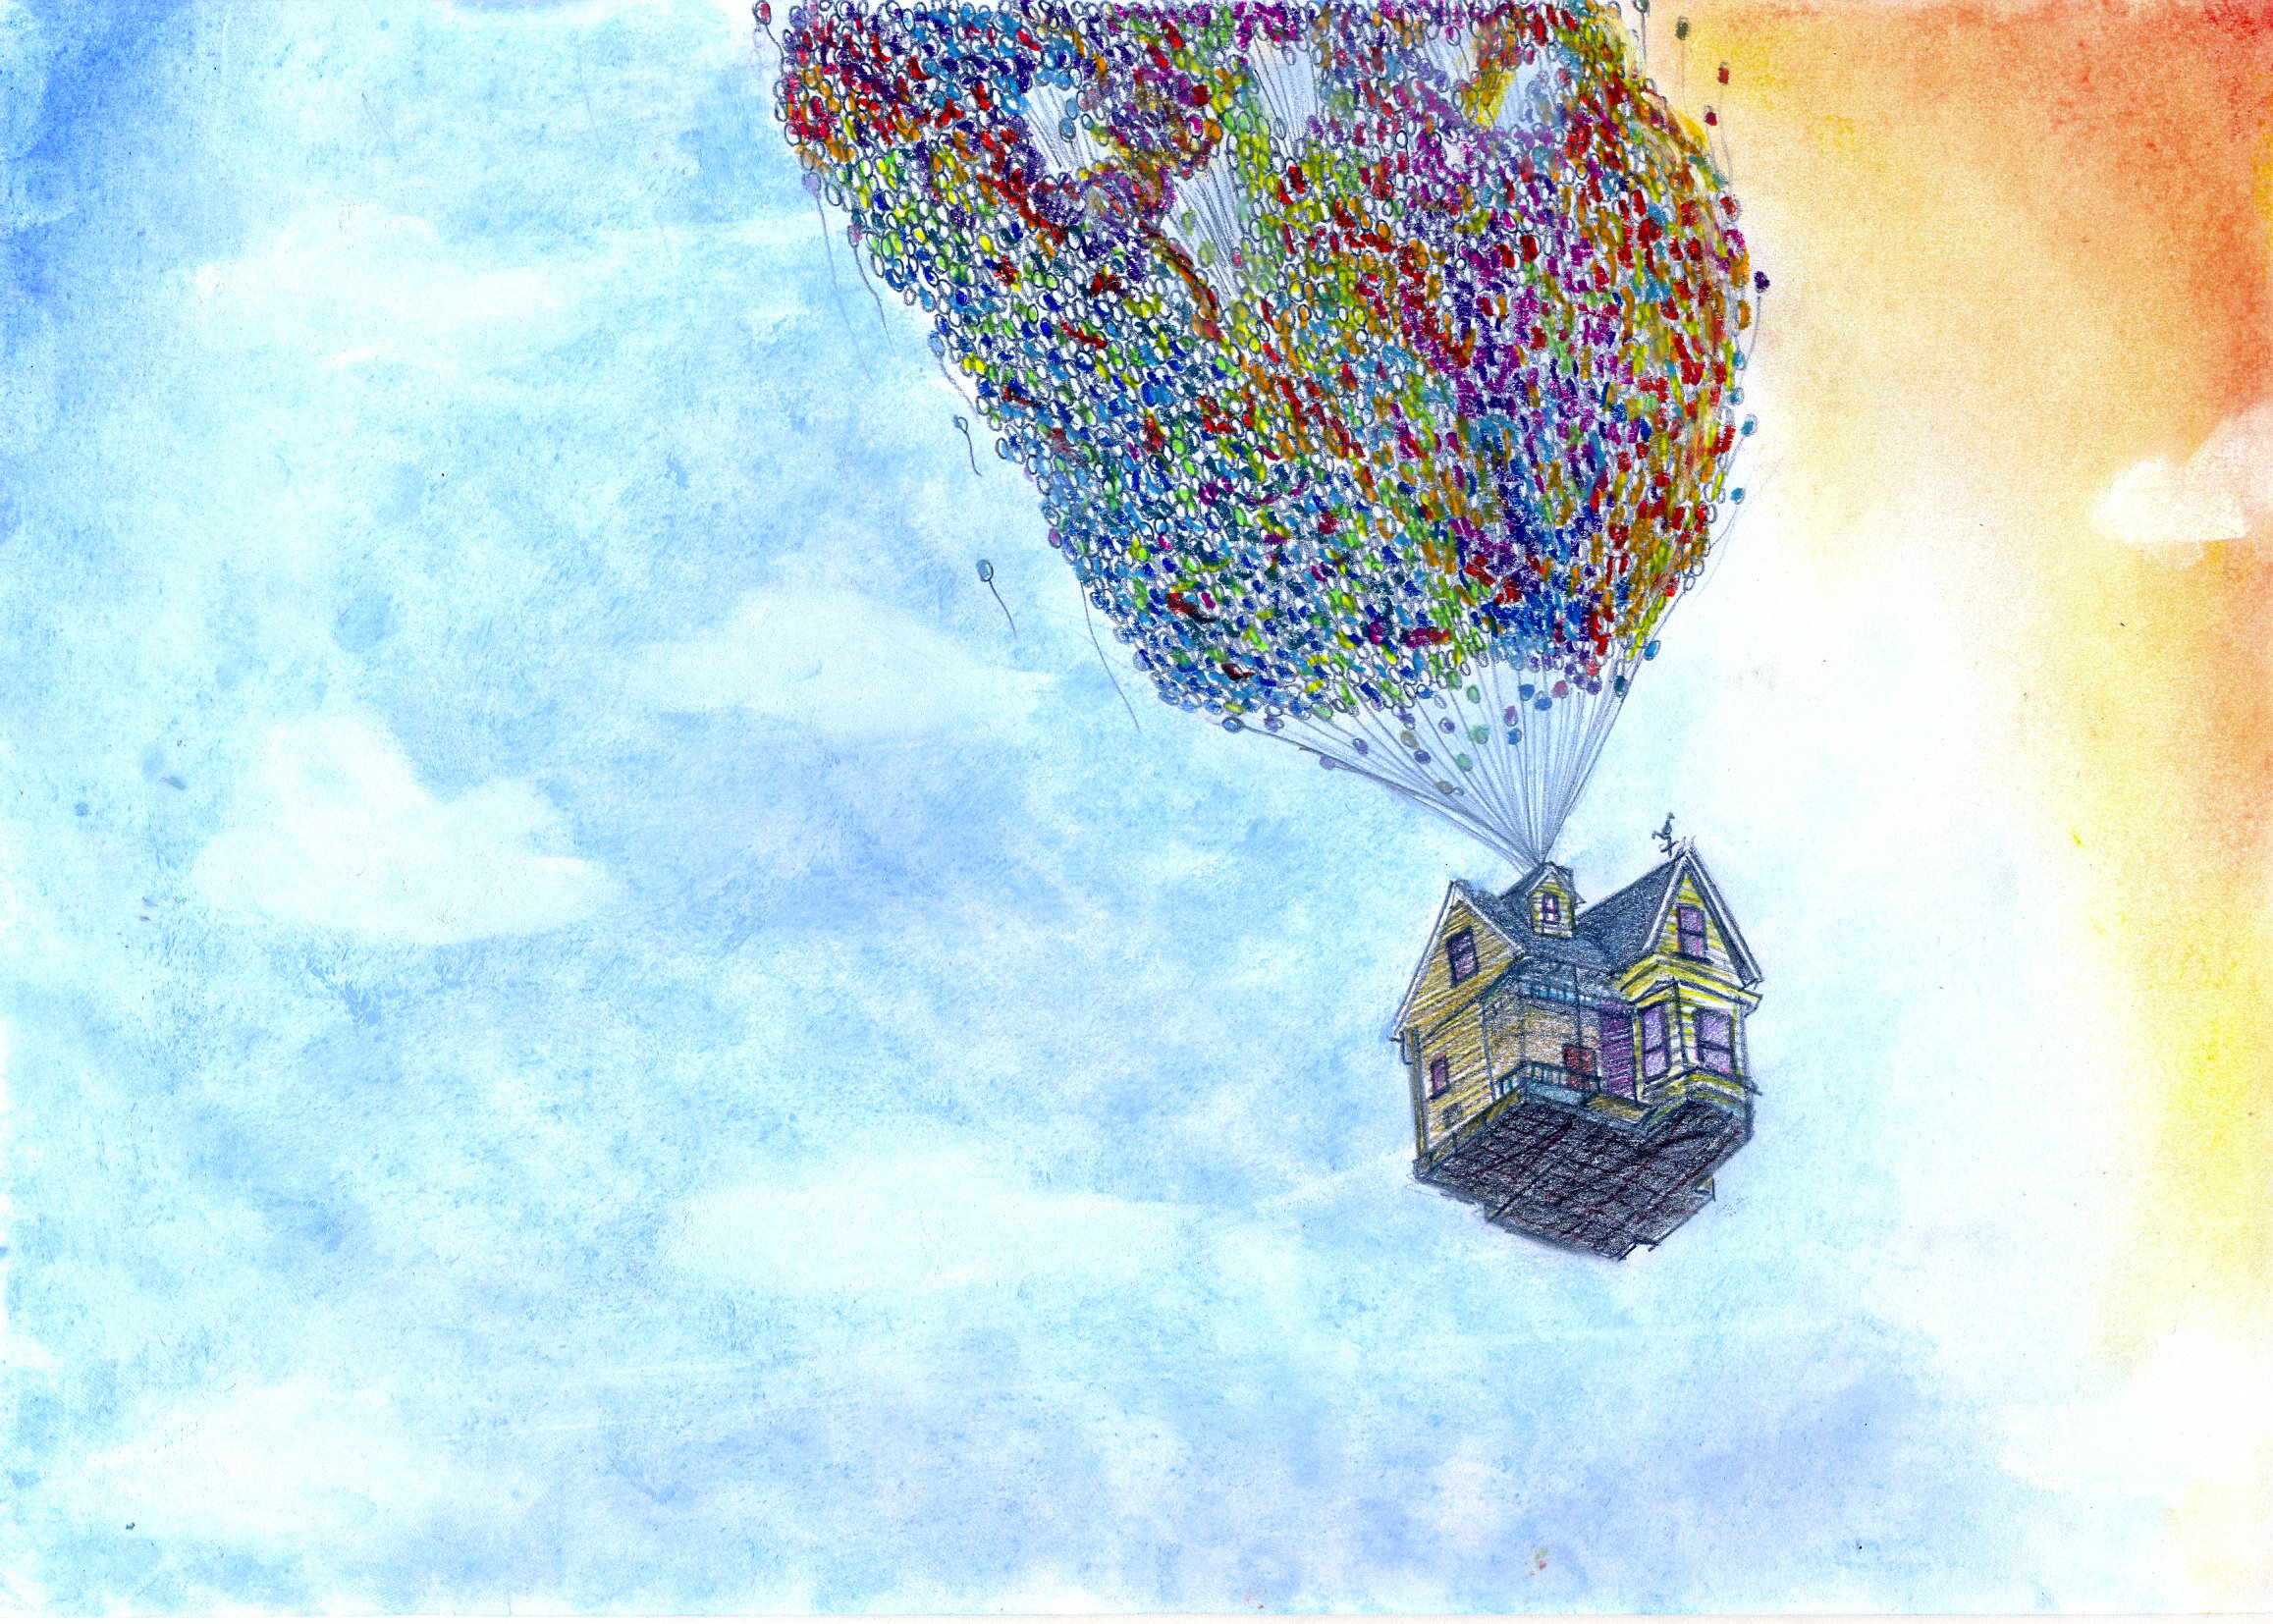 Дом на воздушных шариках. Домик на воздушных шариках. Обои с воздушными шарами. Летающий дом. Воздушный шар вверх.